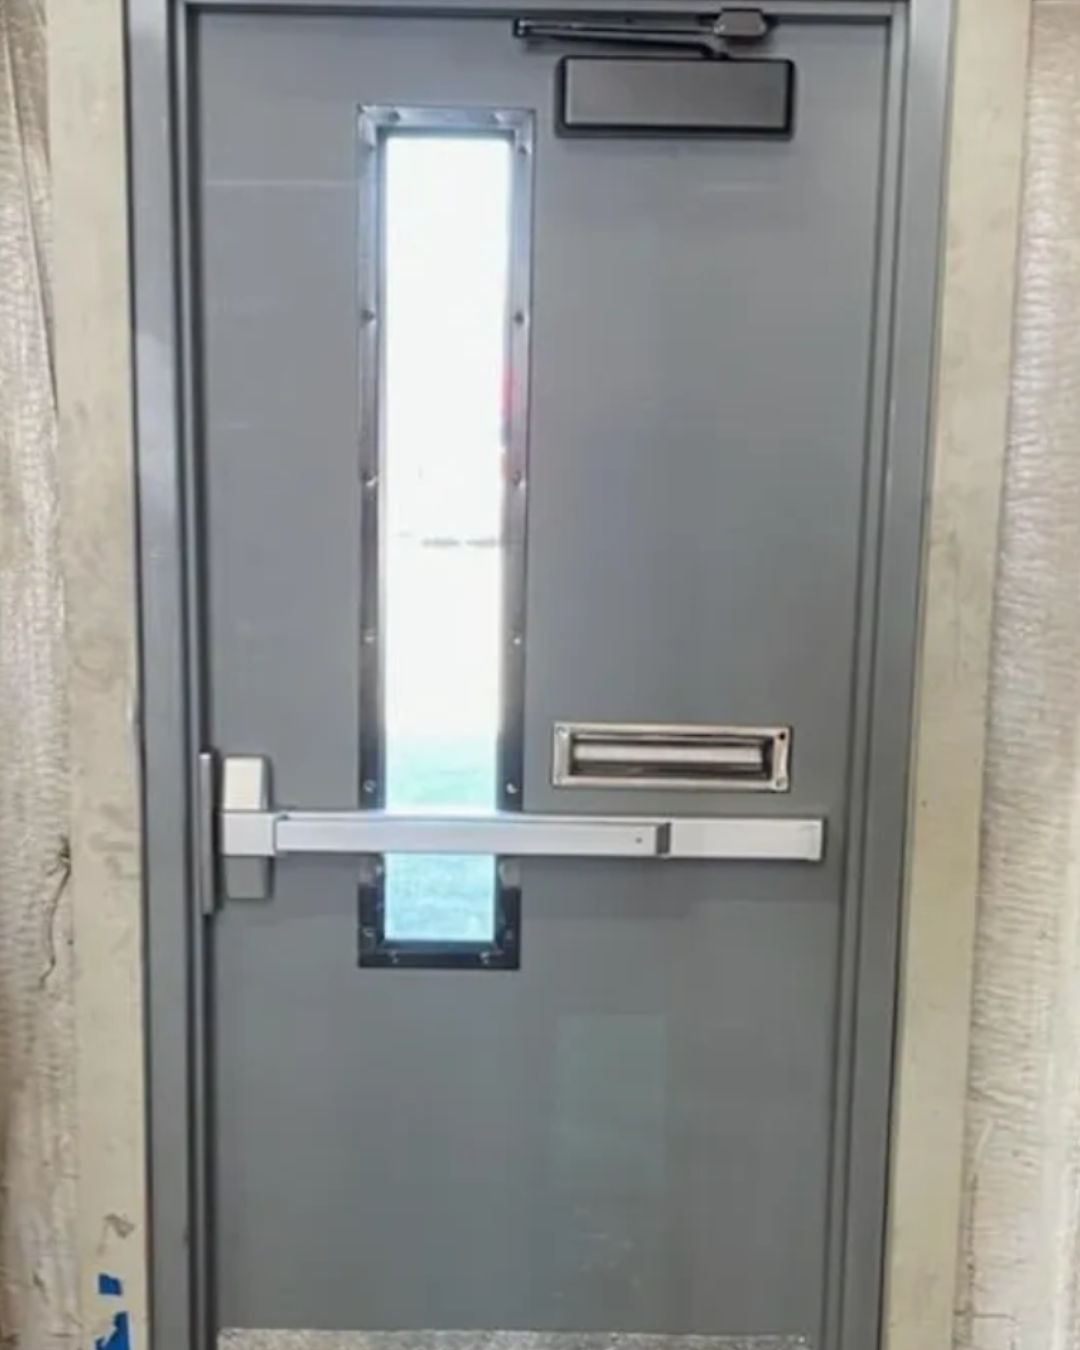 Commercial Fire Door & Egress Door Installation & Repair Service in Charlotte-Raleigh NC